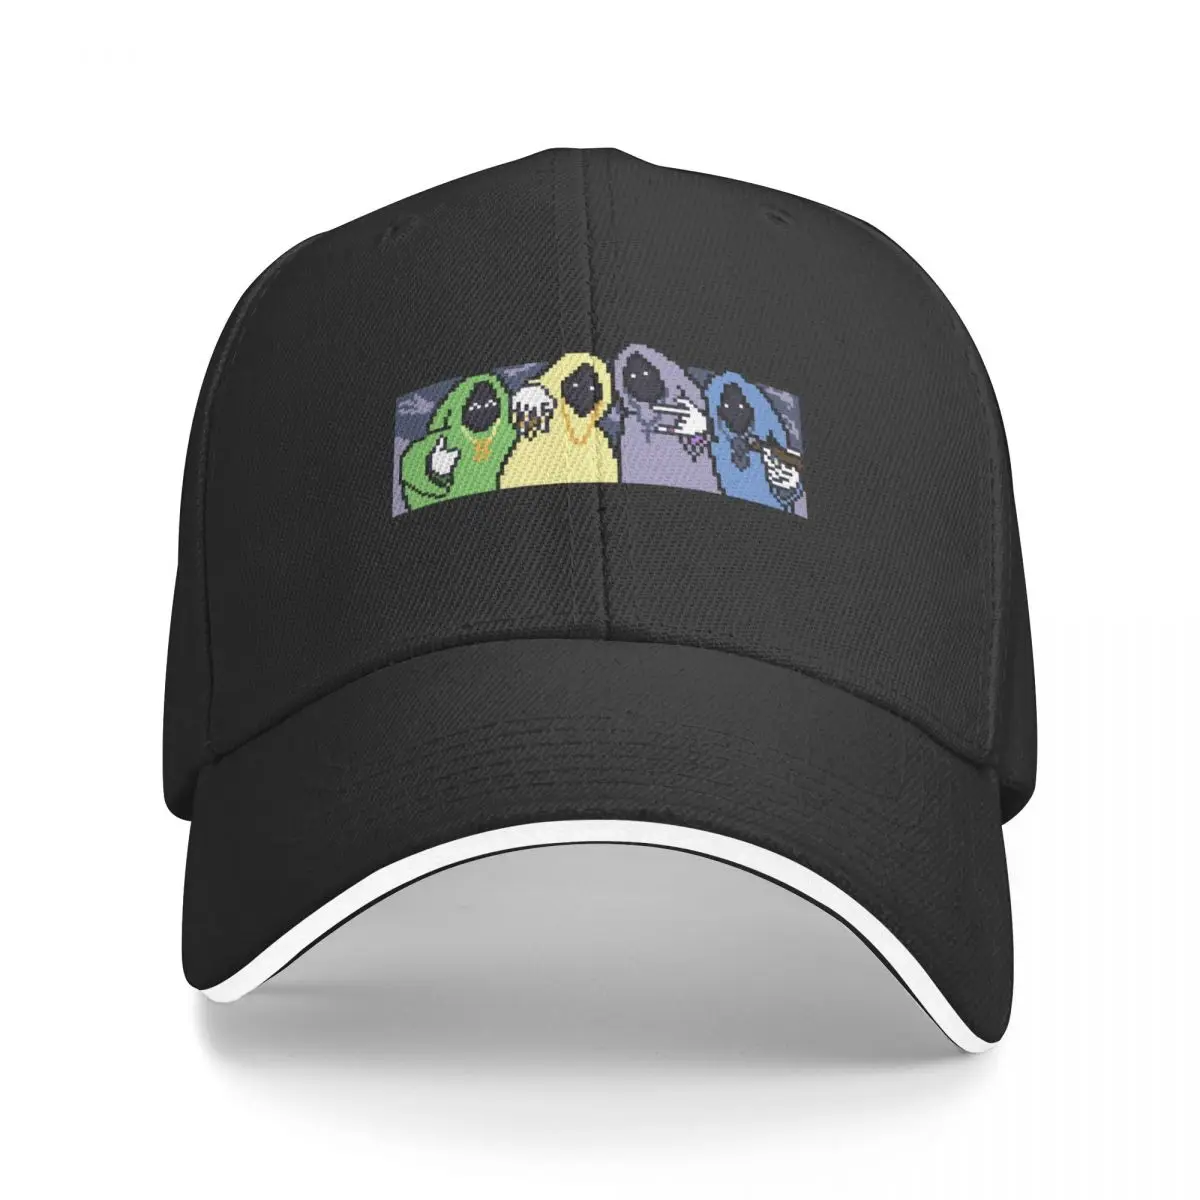 

SHADOW WIZARD MONEY GANG Pixel Art Baseball Cap Beach Golf Cap Sun Hats For Women Men's